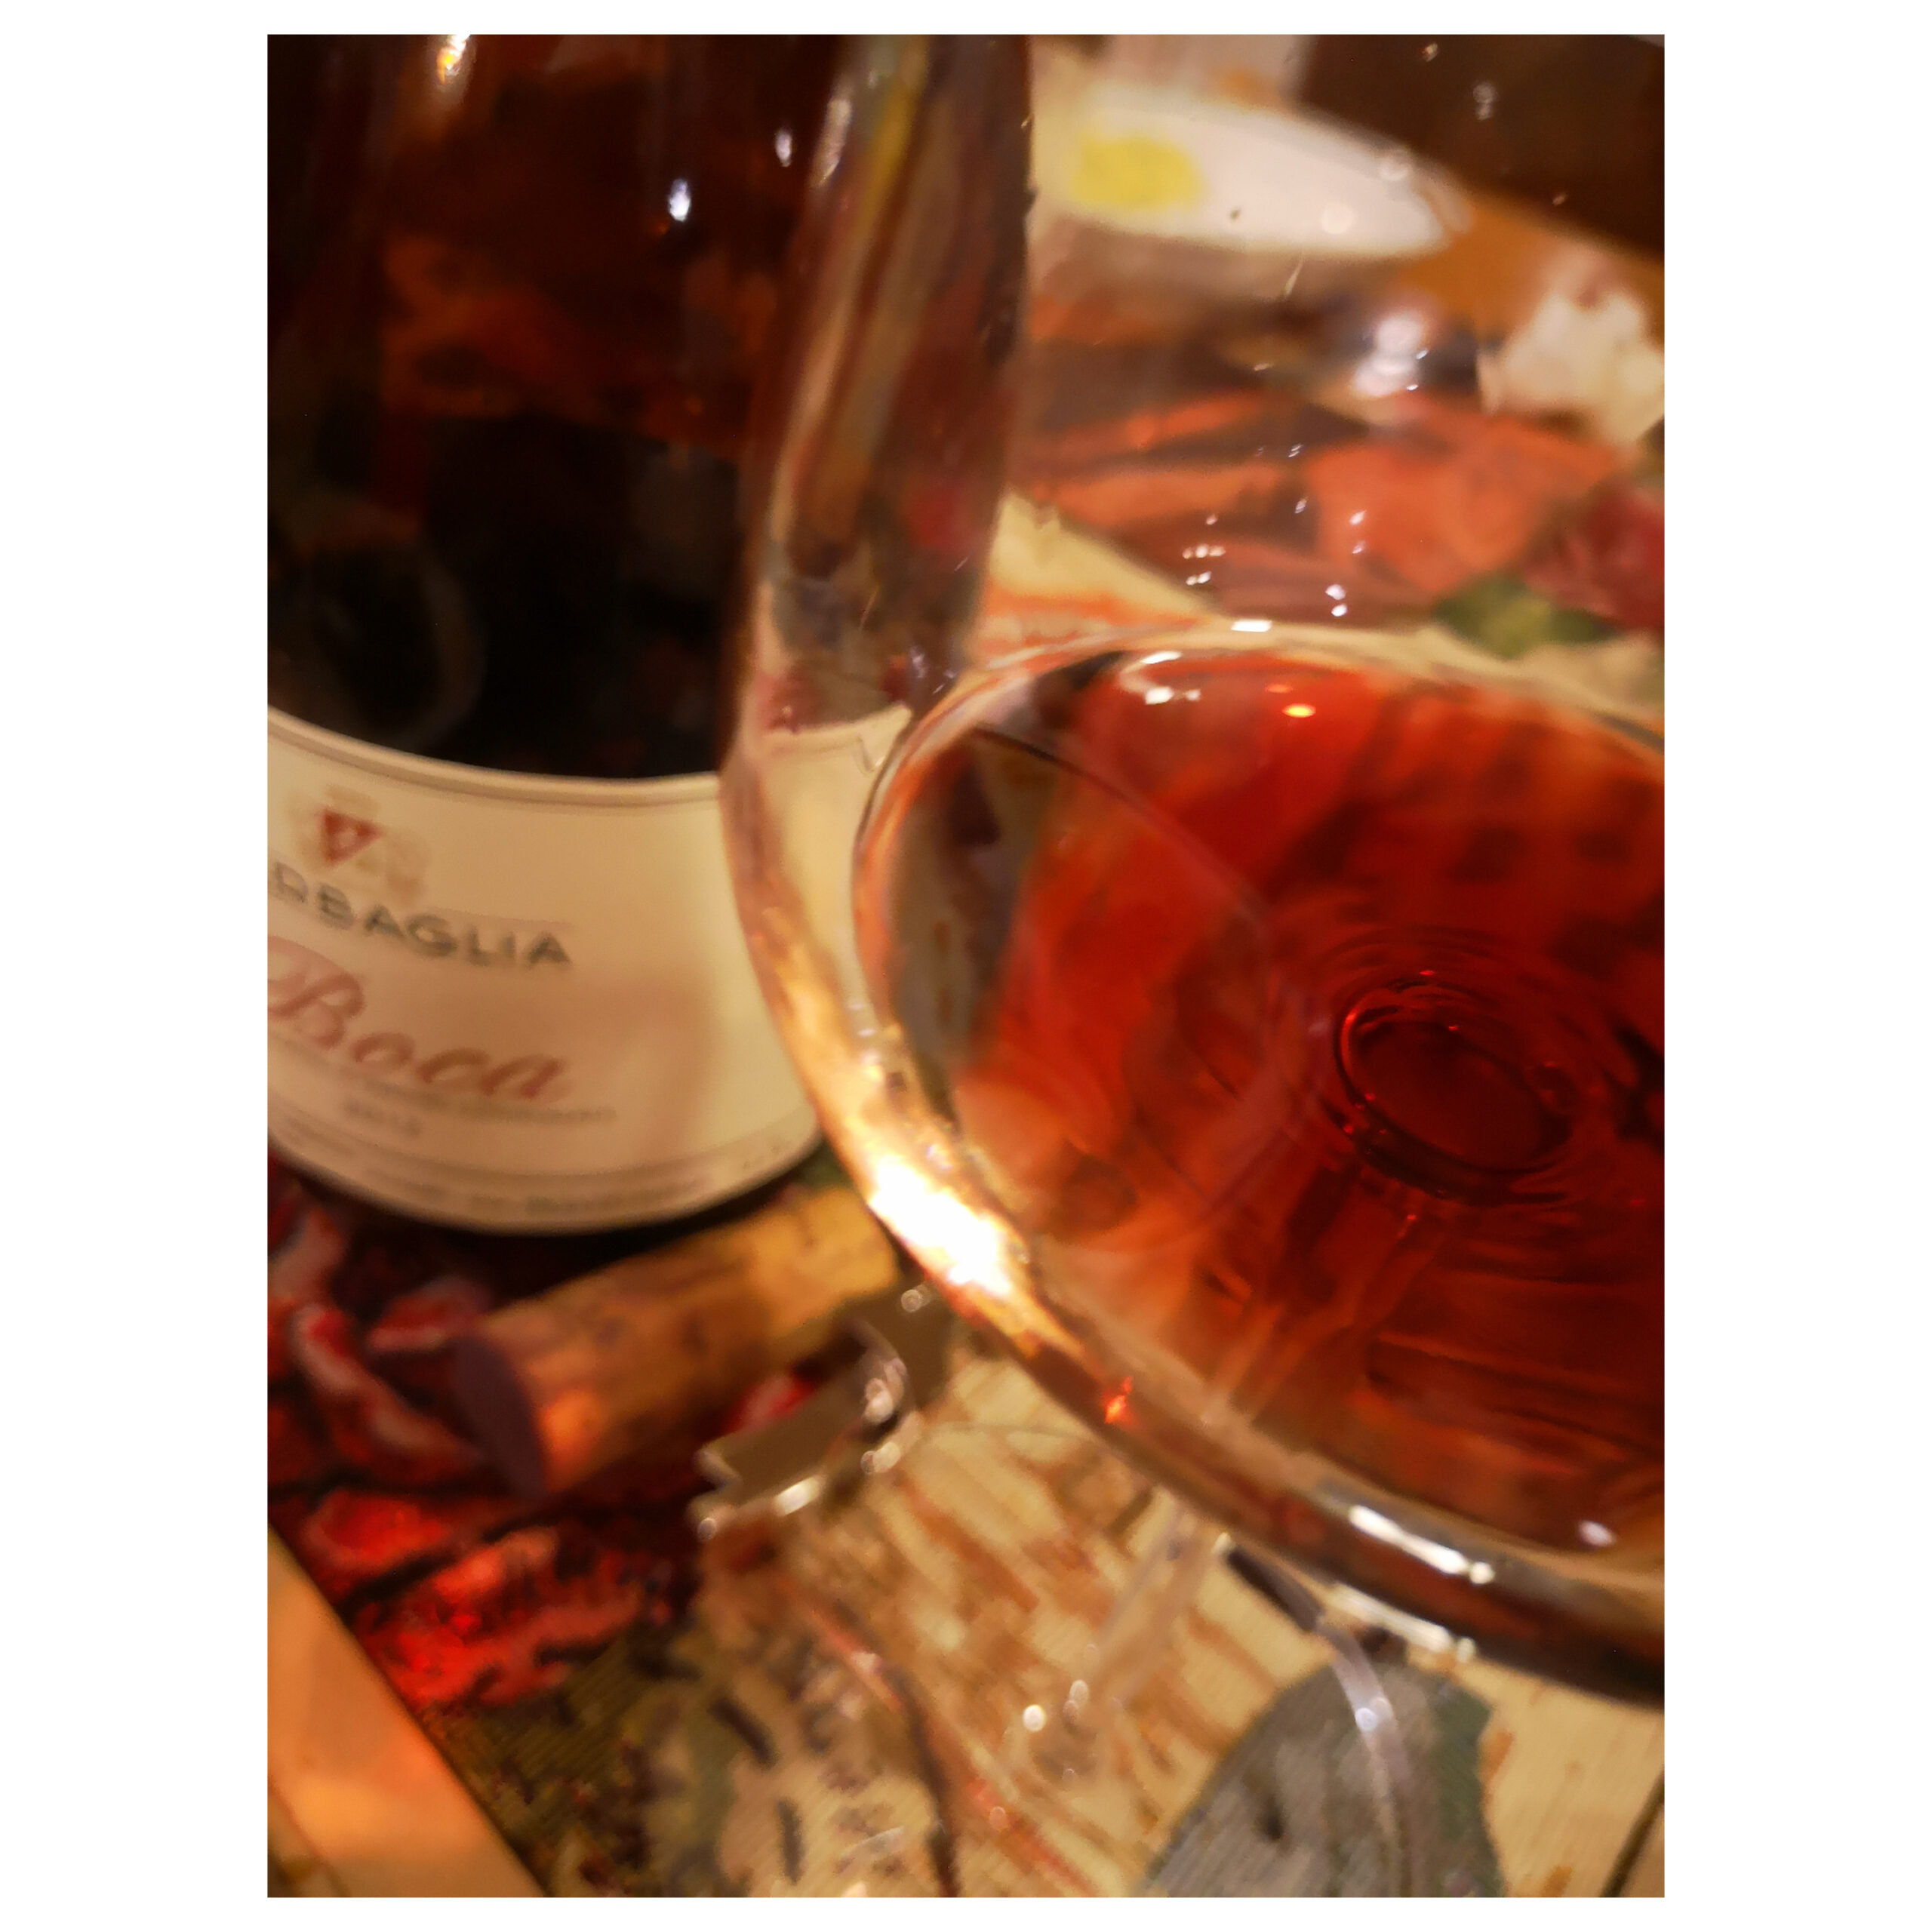 Enonauta/Degustazione di Vino #302 - review - BOCA 2012 - BARBAGLIA | Un vino splendido, generoso, complesso, raffinato.